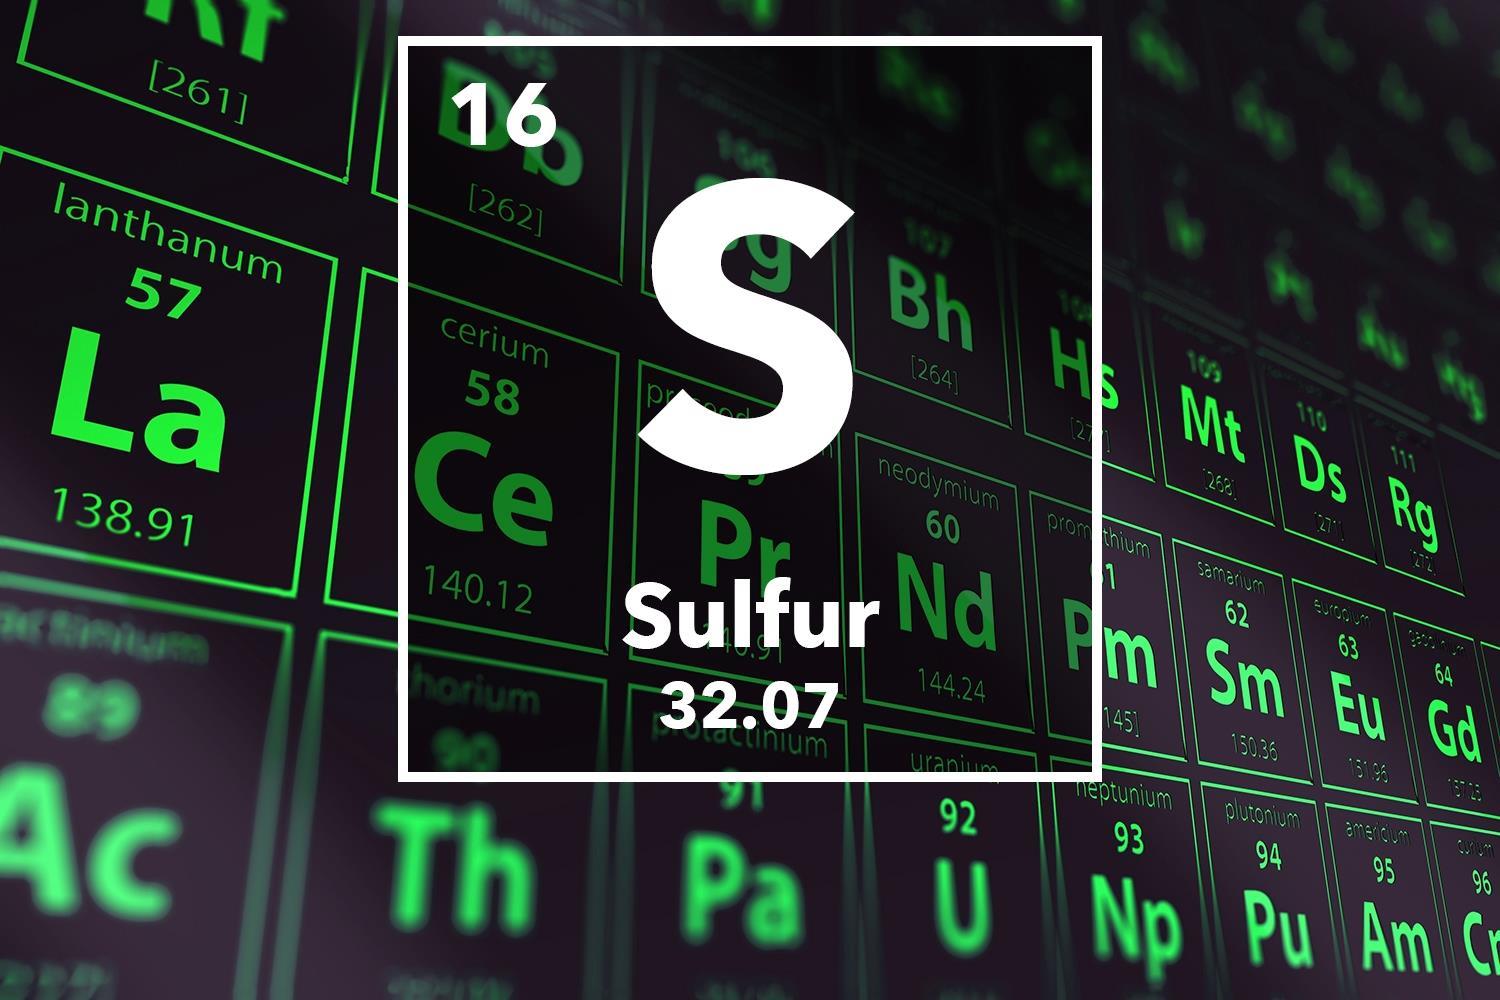 sulfur periodic table